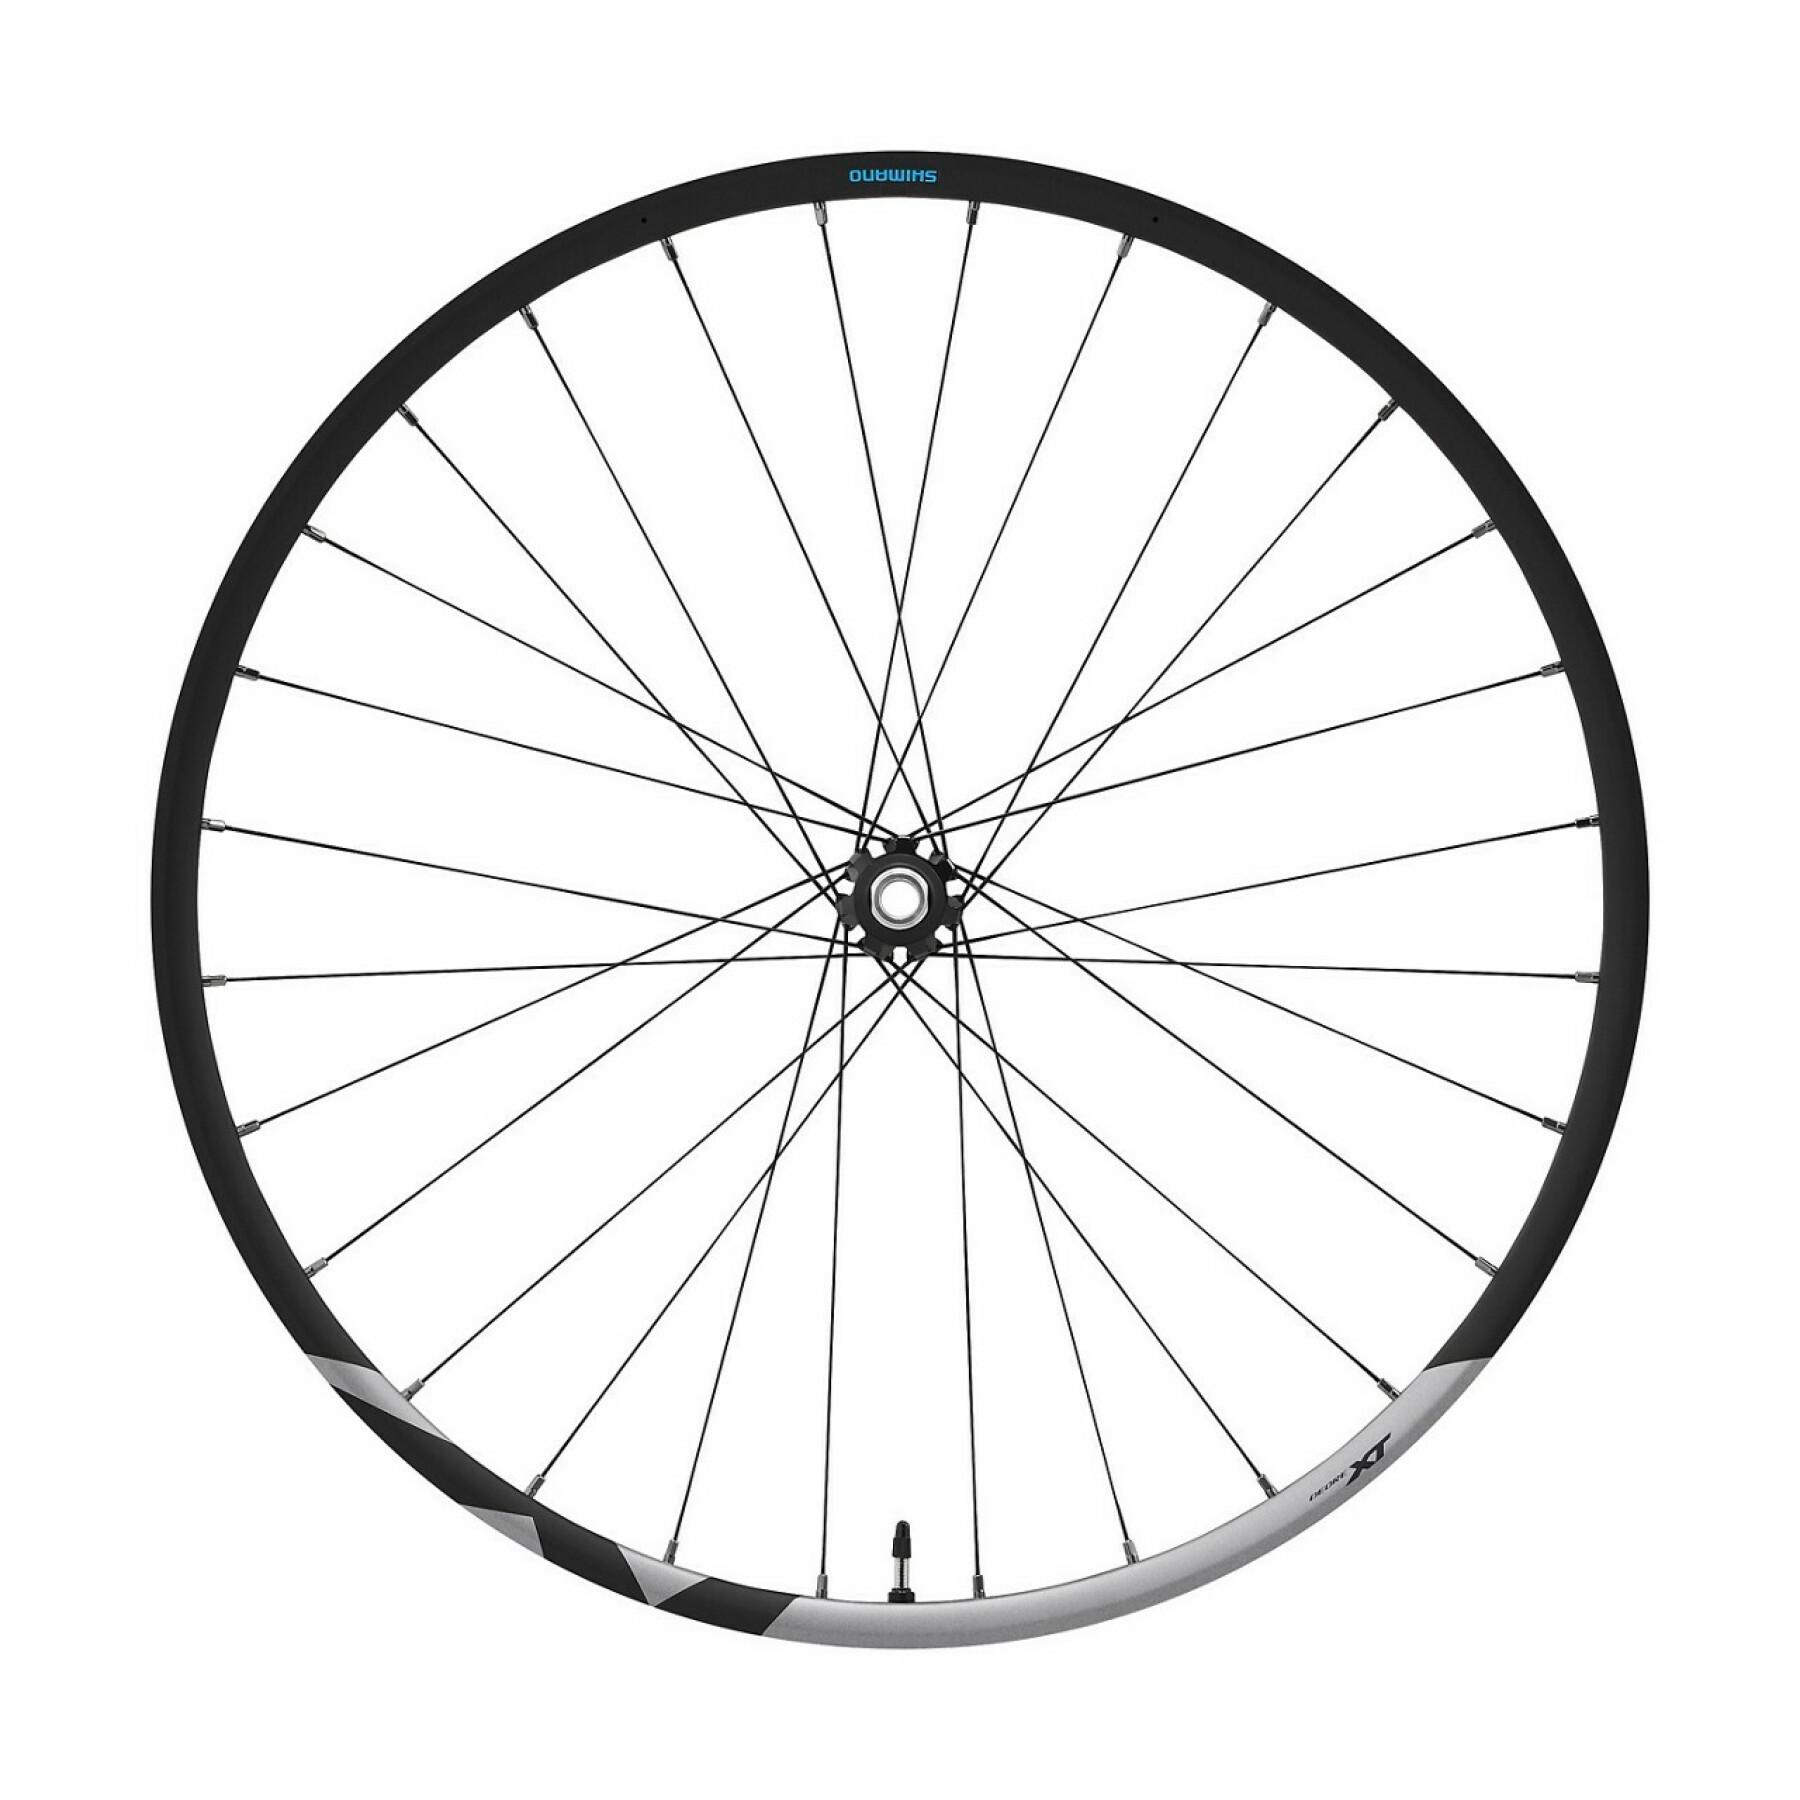 Bicycle wheel disc brake central locking Shimano Deore XT WH-M8100